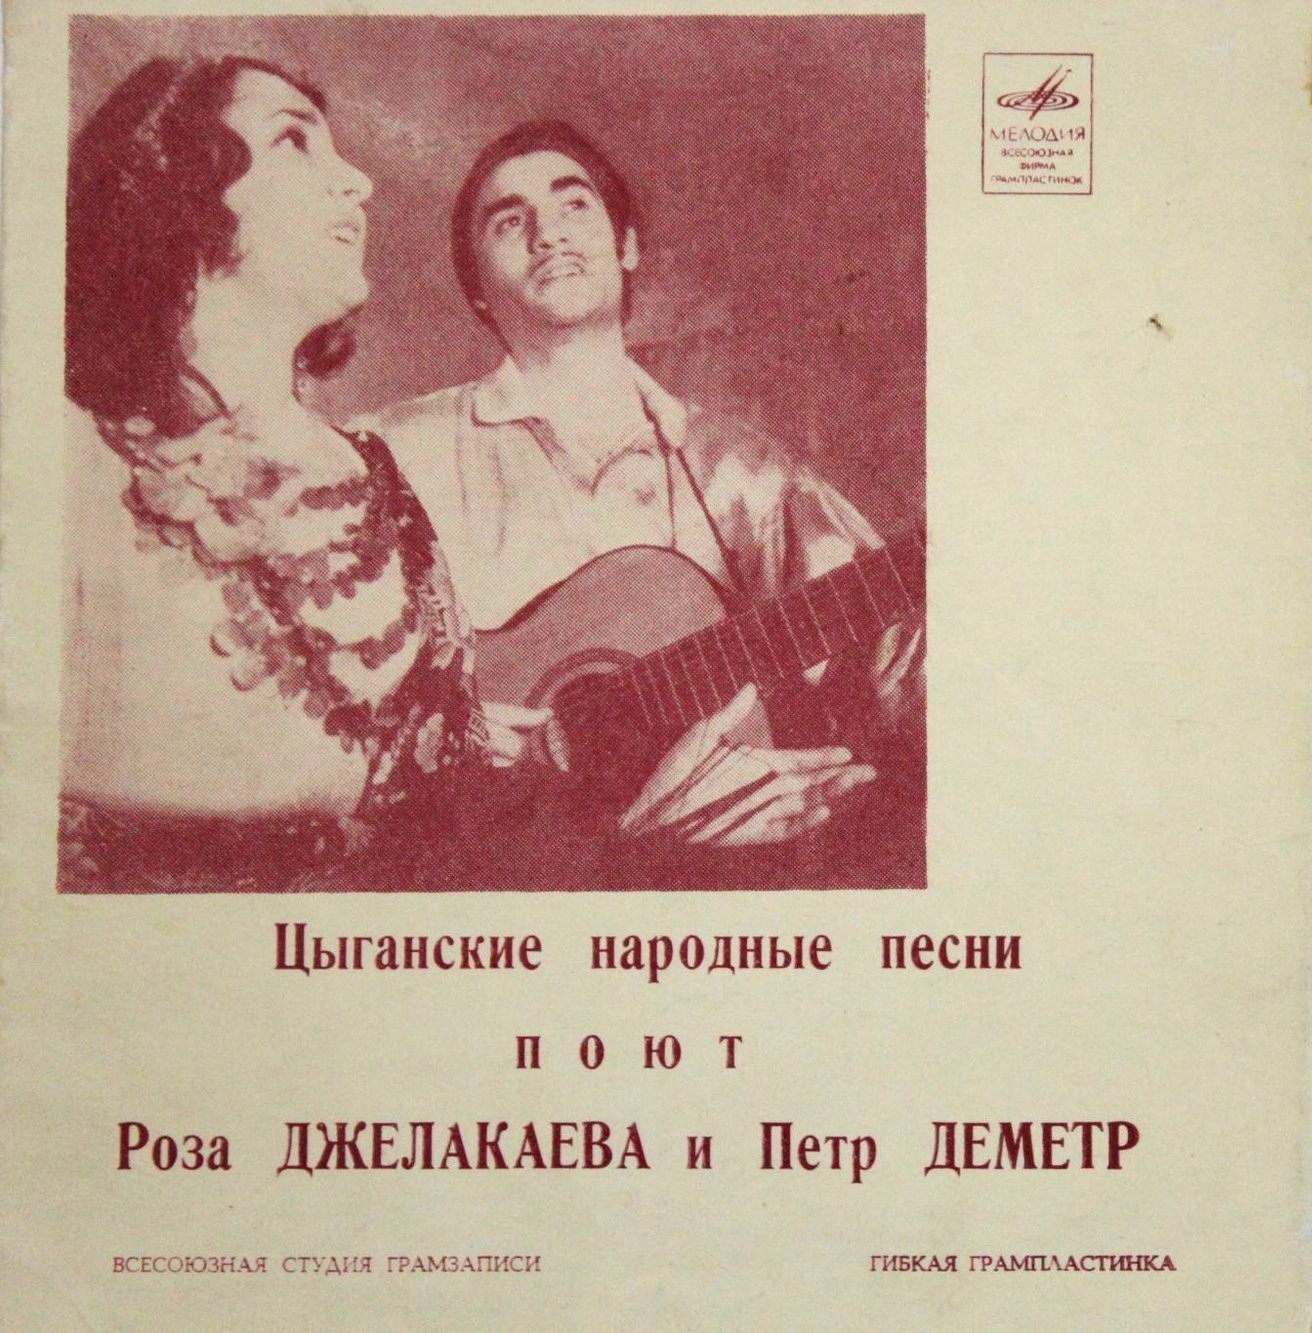 Цыганские народные песни поют Роза Джелакаева и Пётр Деметр